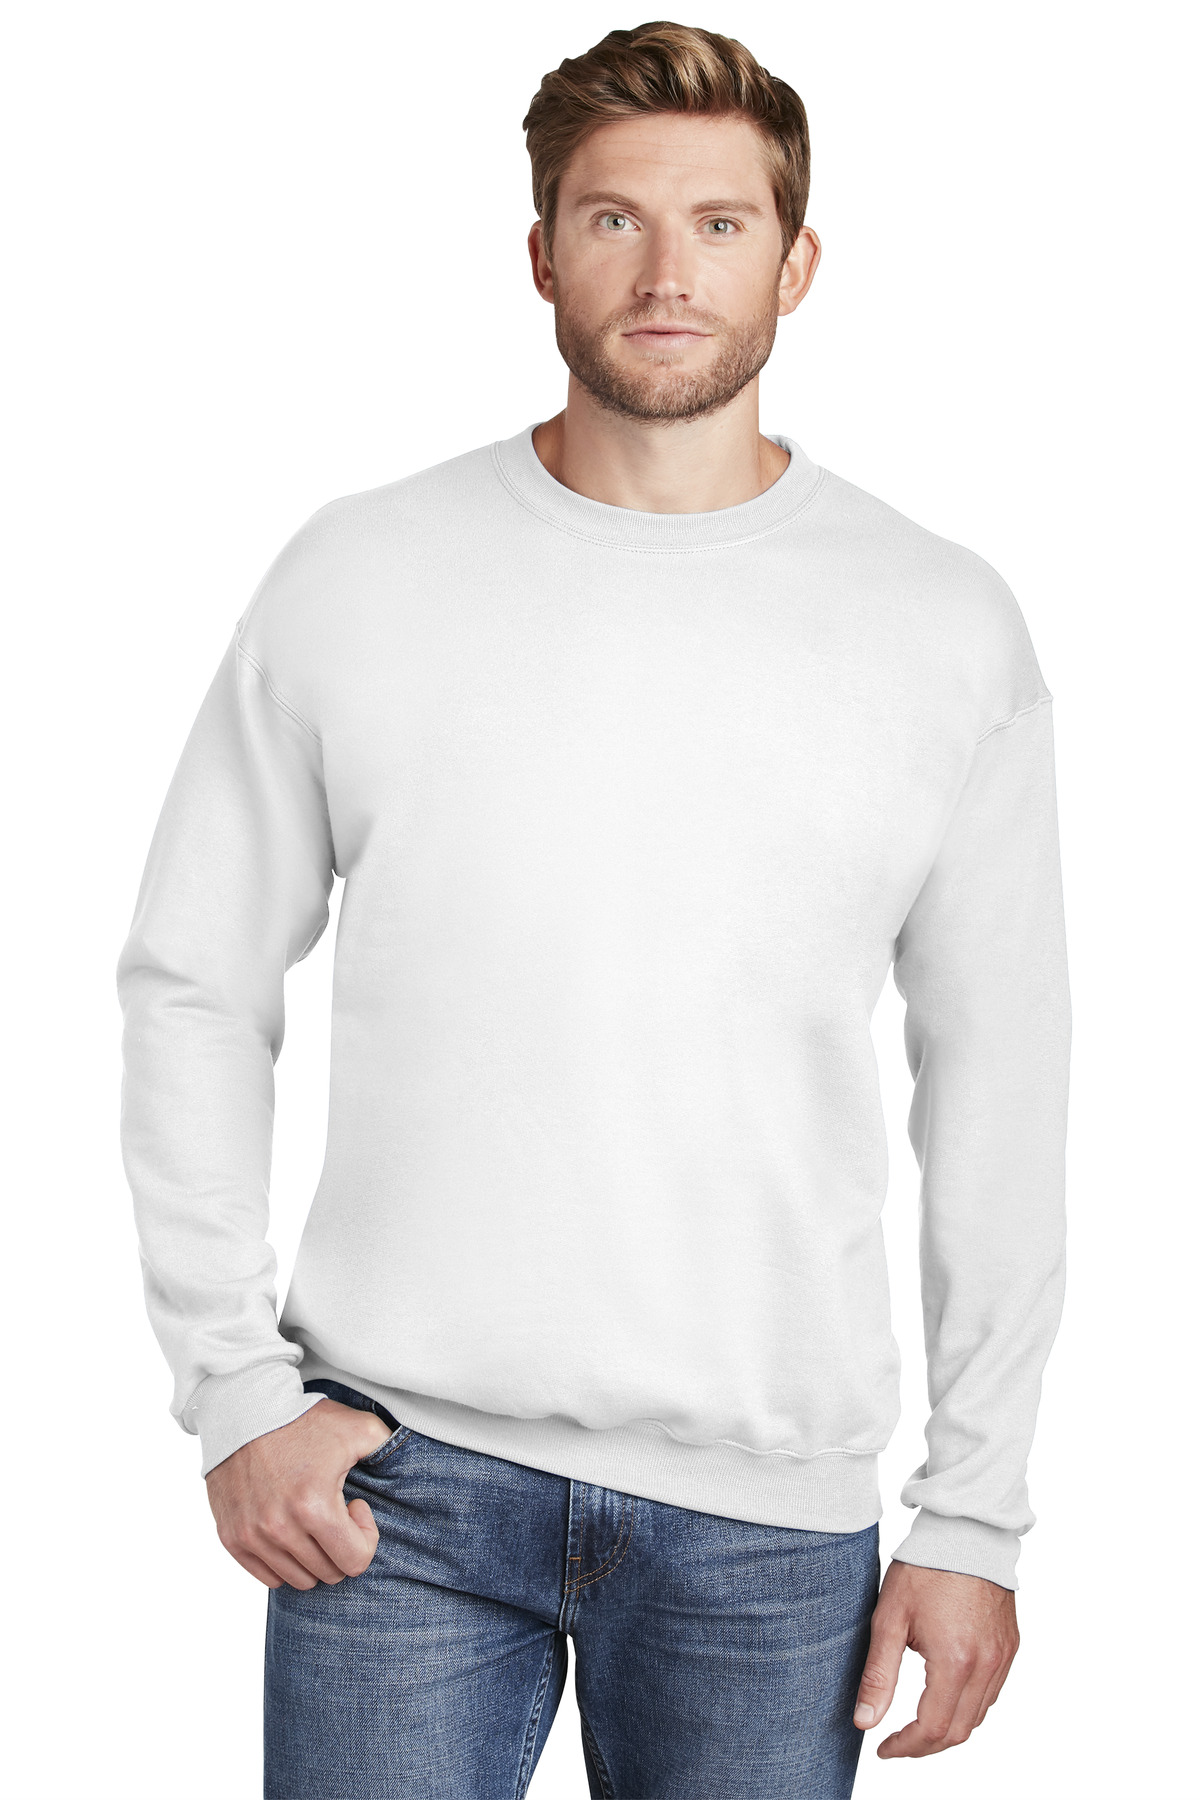 Hanes Ultimate Cotton - Crewneck Sweatshirt-